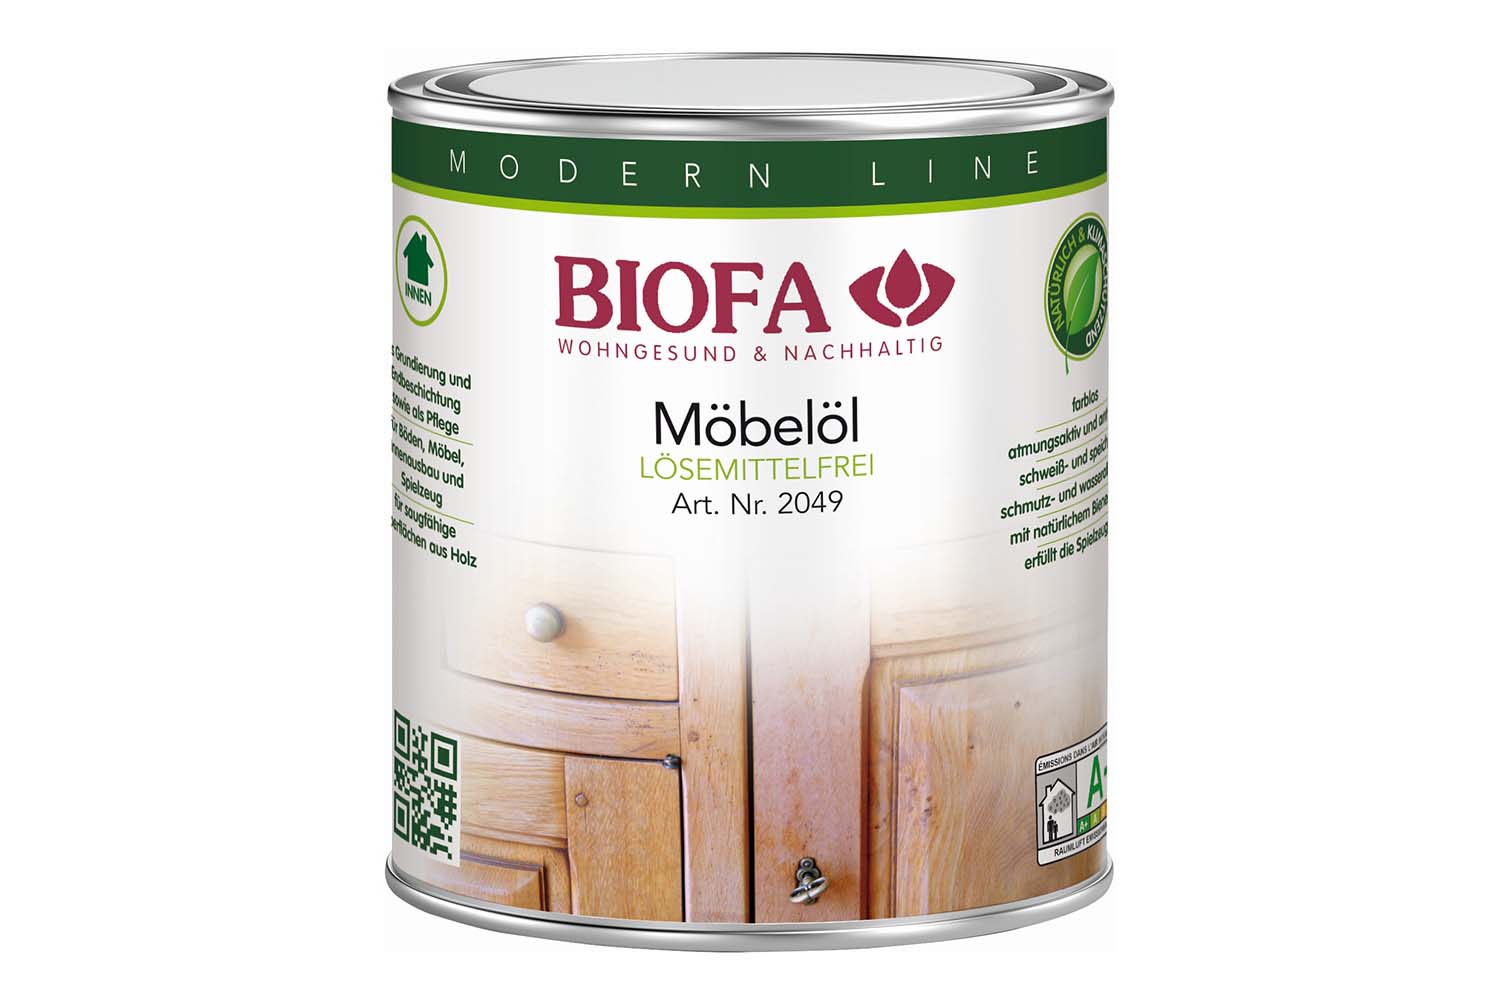 Biofa Möbelöl, lösemittelfrei